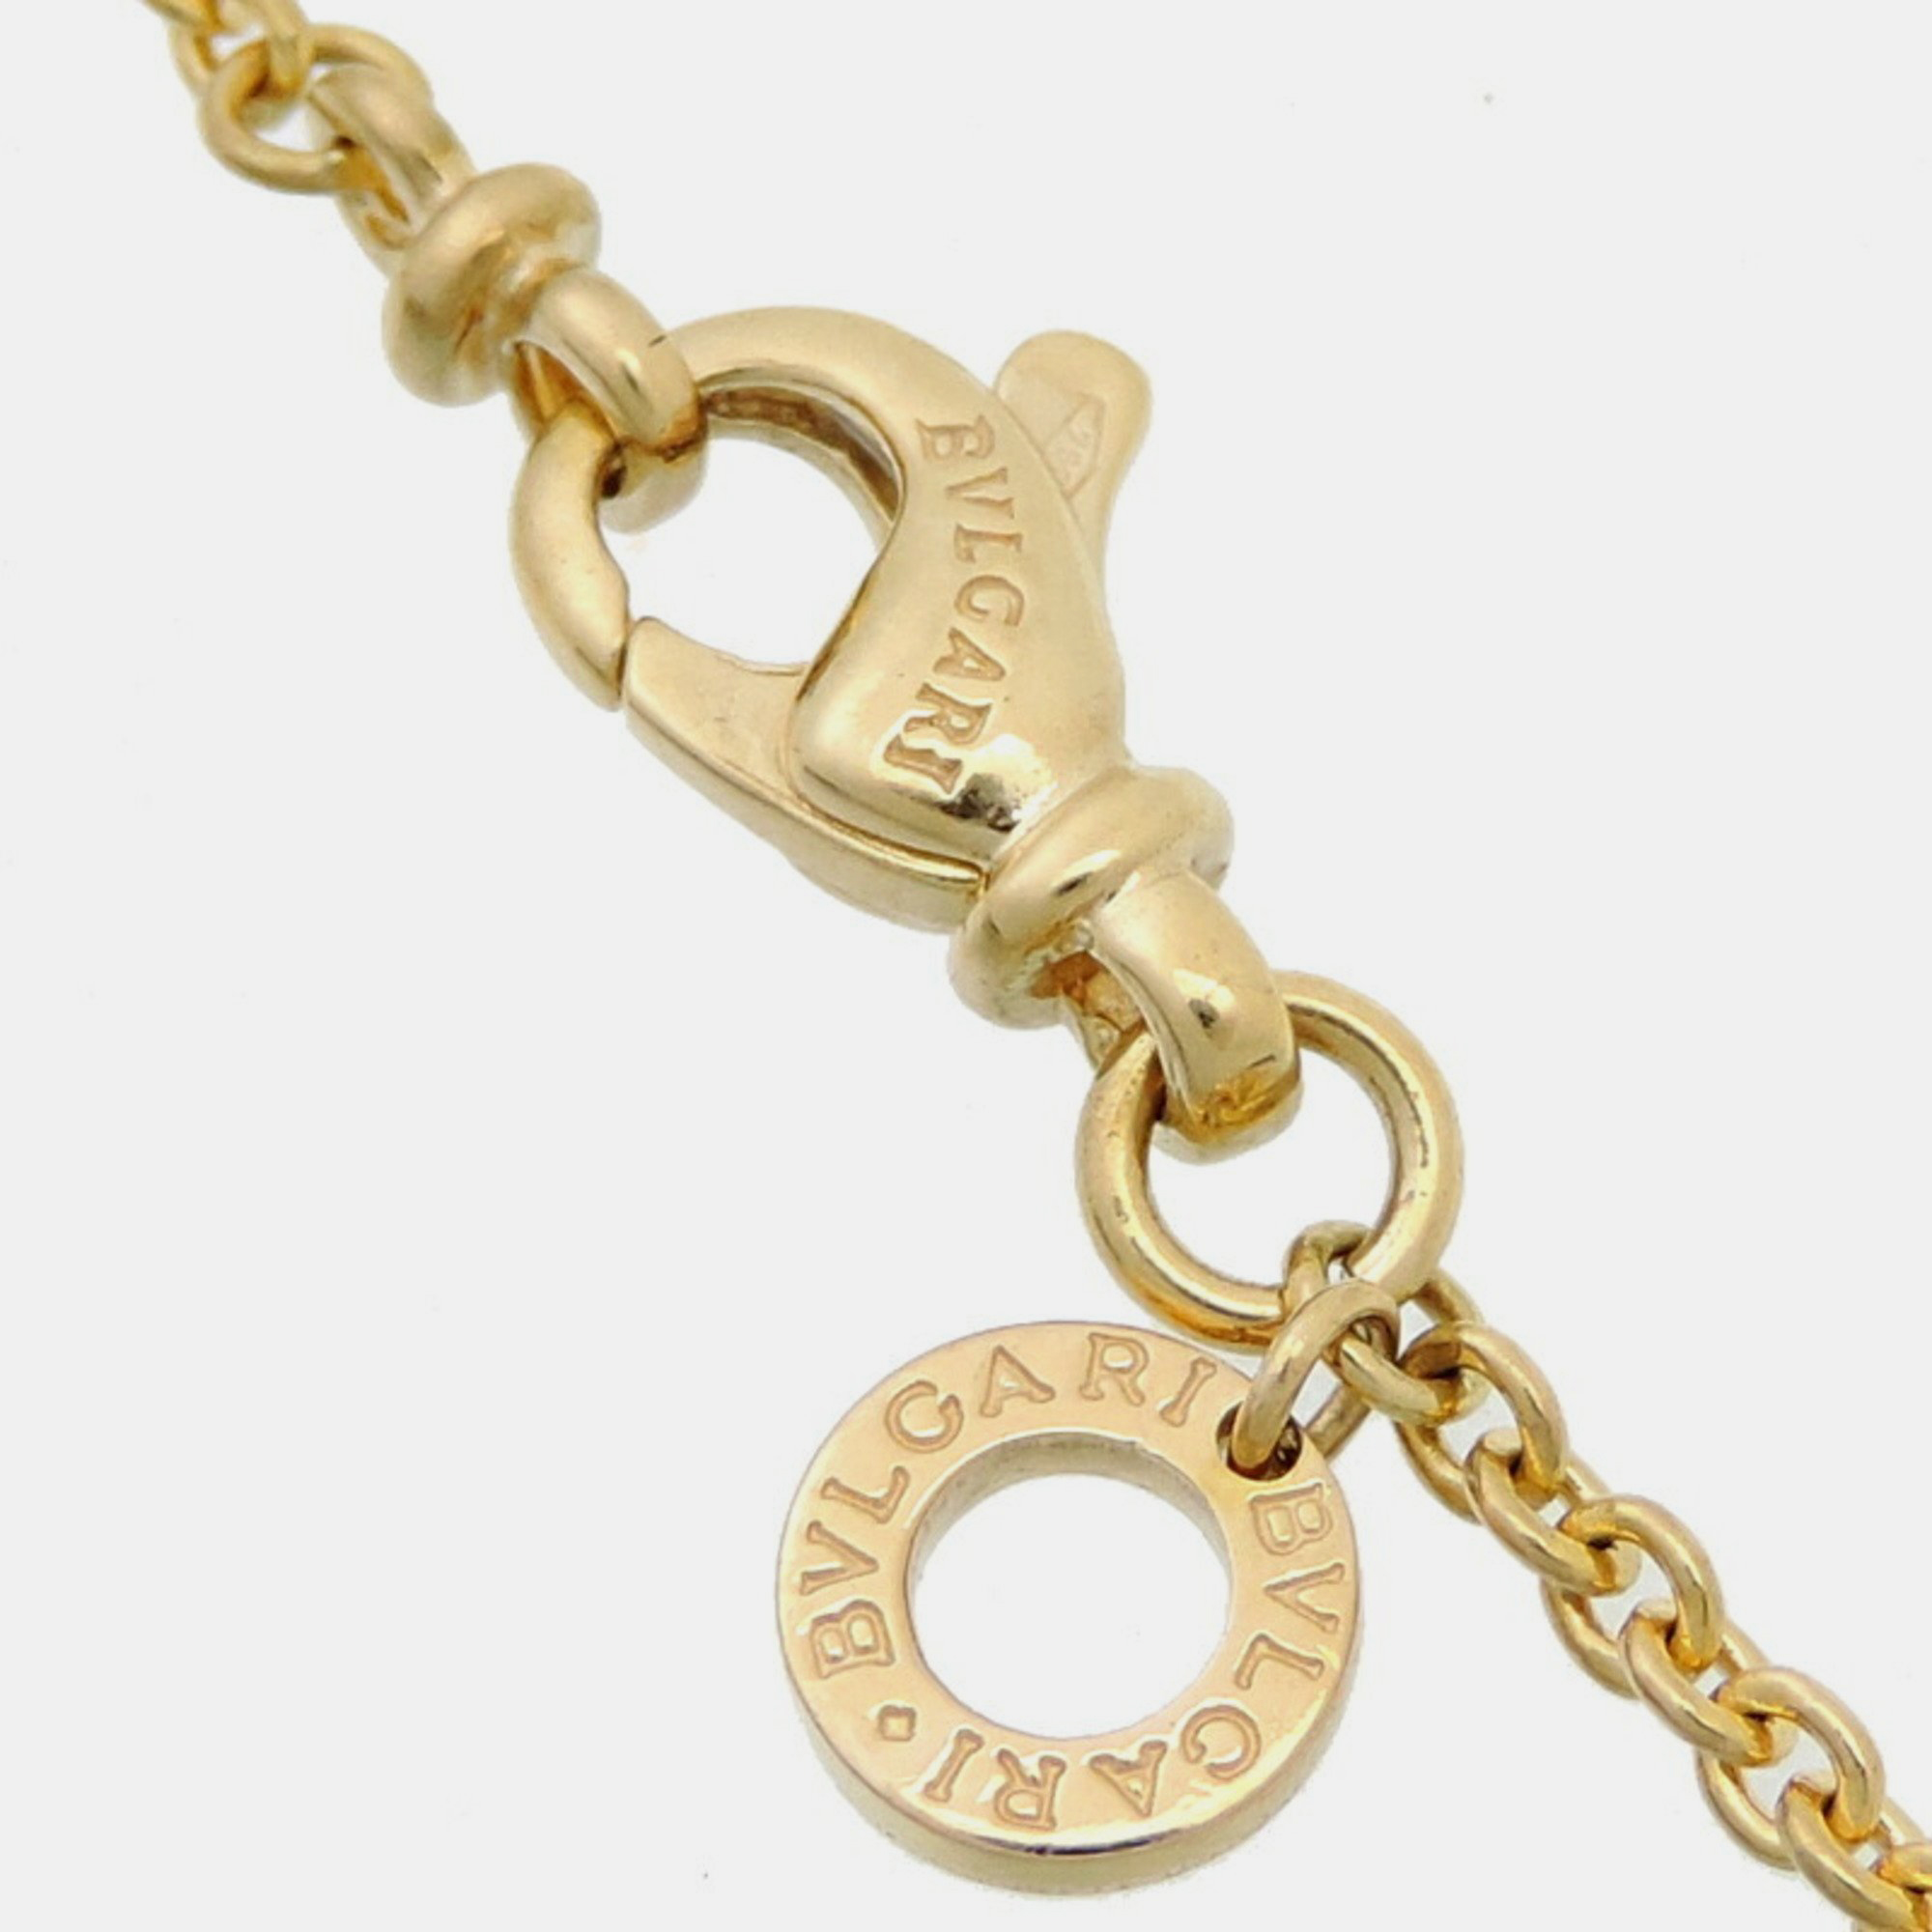 Bvlgari B.Zero1 18K Yellow Gold Diamond Necklace